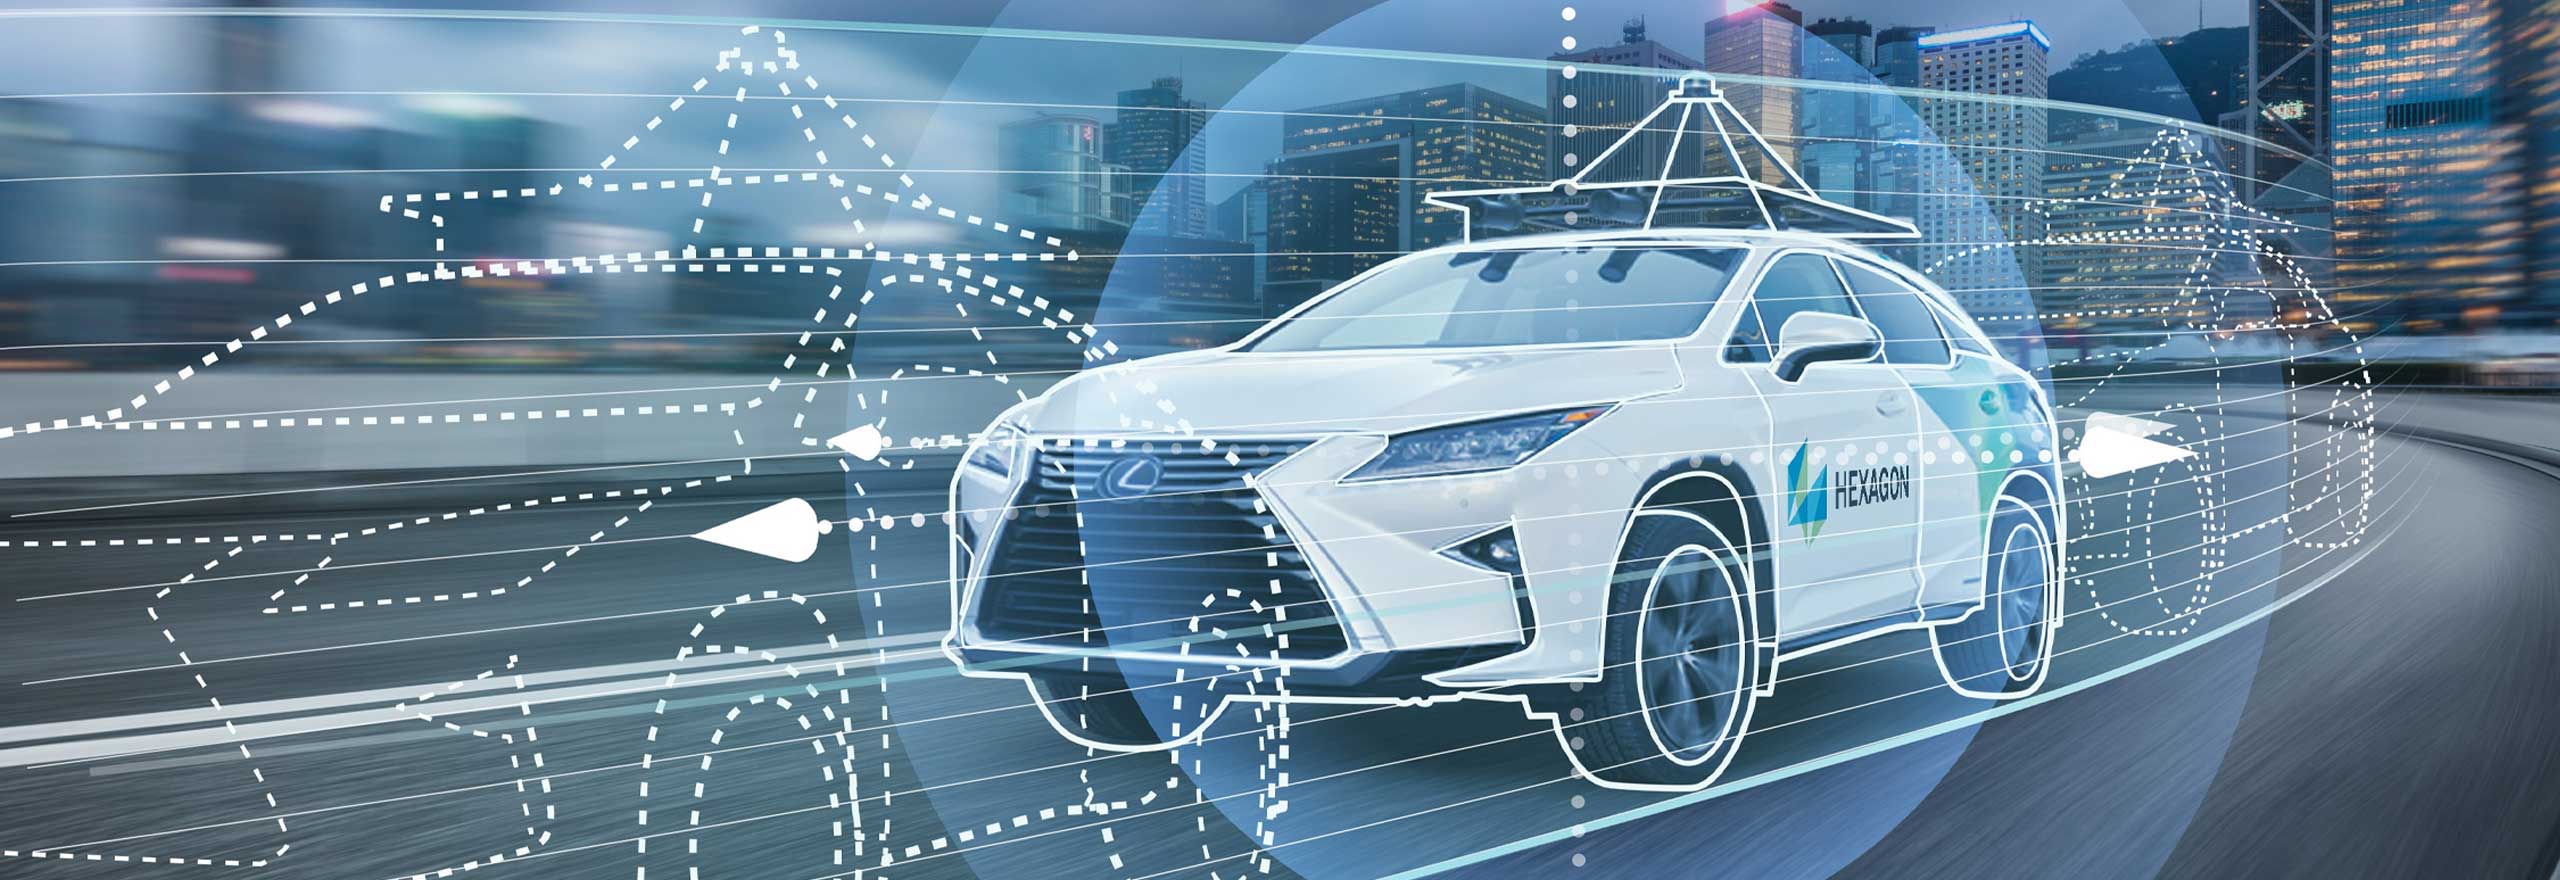 Un'auto autonoma che guida su strada grazie all'uso di tecnologie di posizionamento e percezione e alla fusione di sensori.